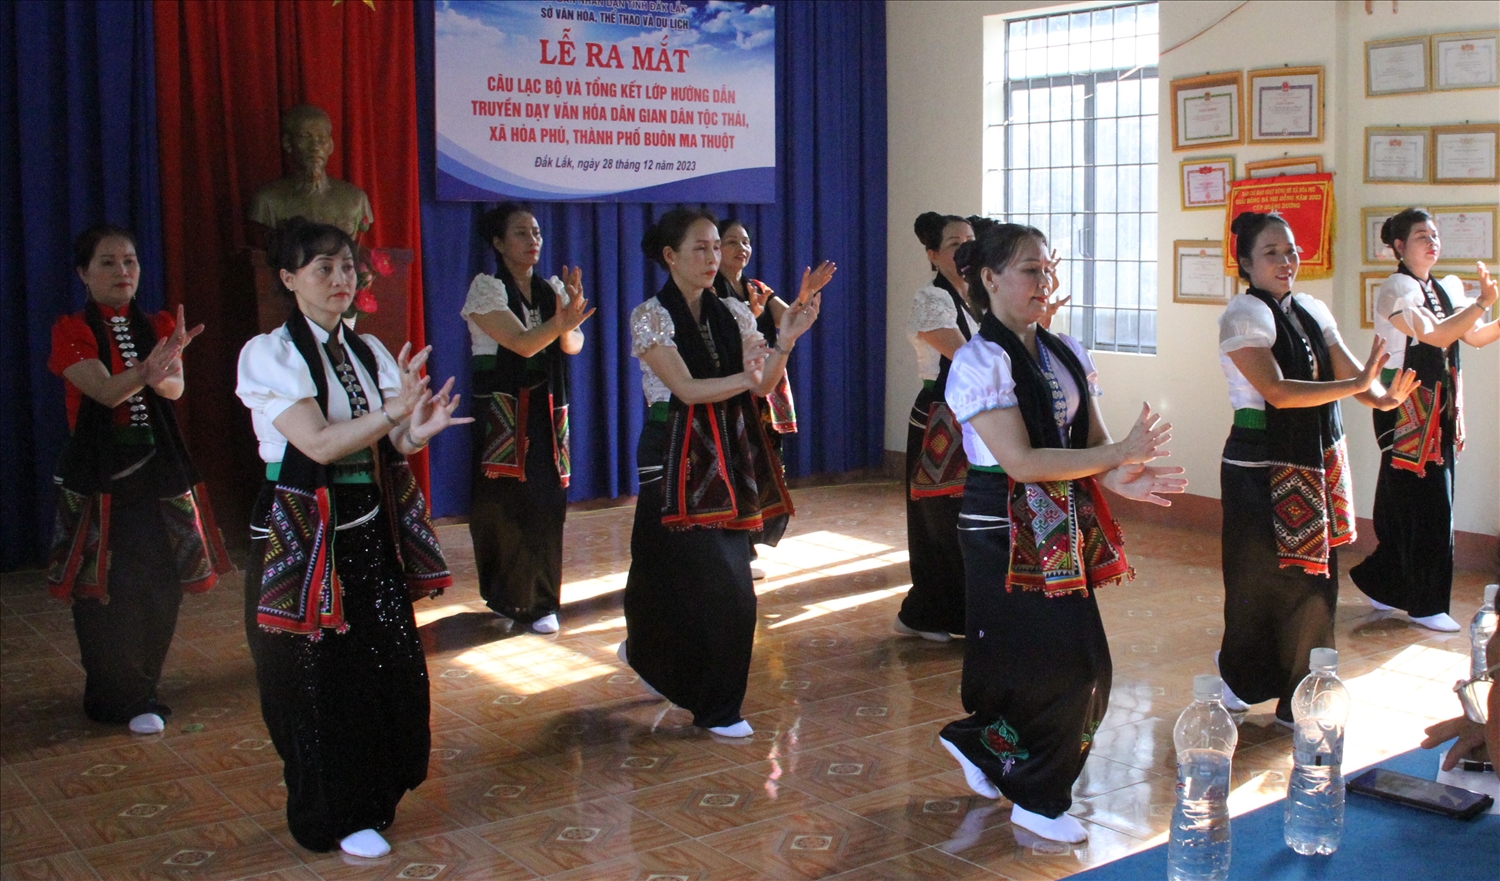 Thành viên Câu lạc bộ Văn hóa dân gian dân tộc Thái xã Hòa Phú thuộc Dự án “Bảo tồn, phát huy giá trị văn hóa truyền thống tốt đẹp của các dân tộc thiểu số gắn với phát triển du lịch”